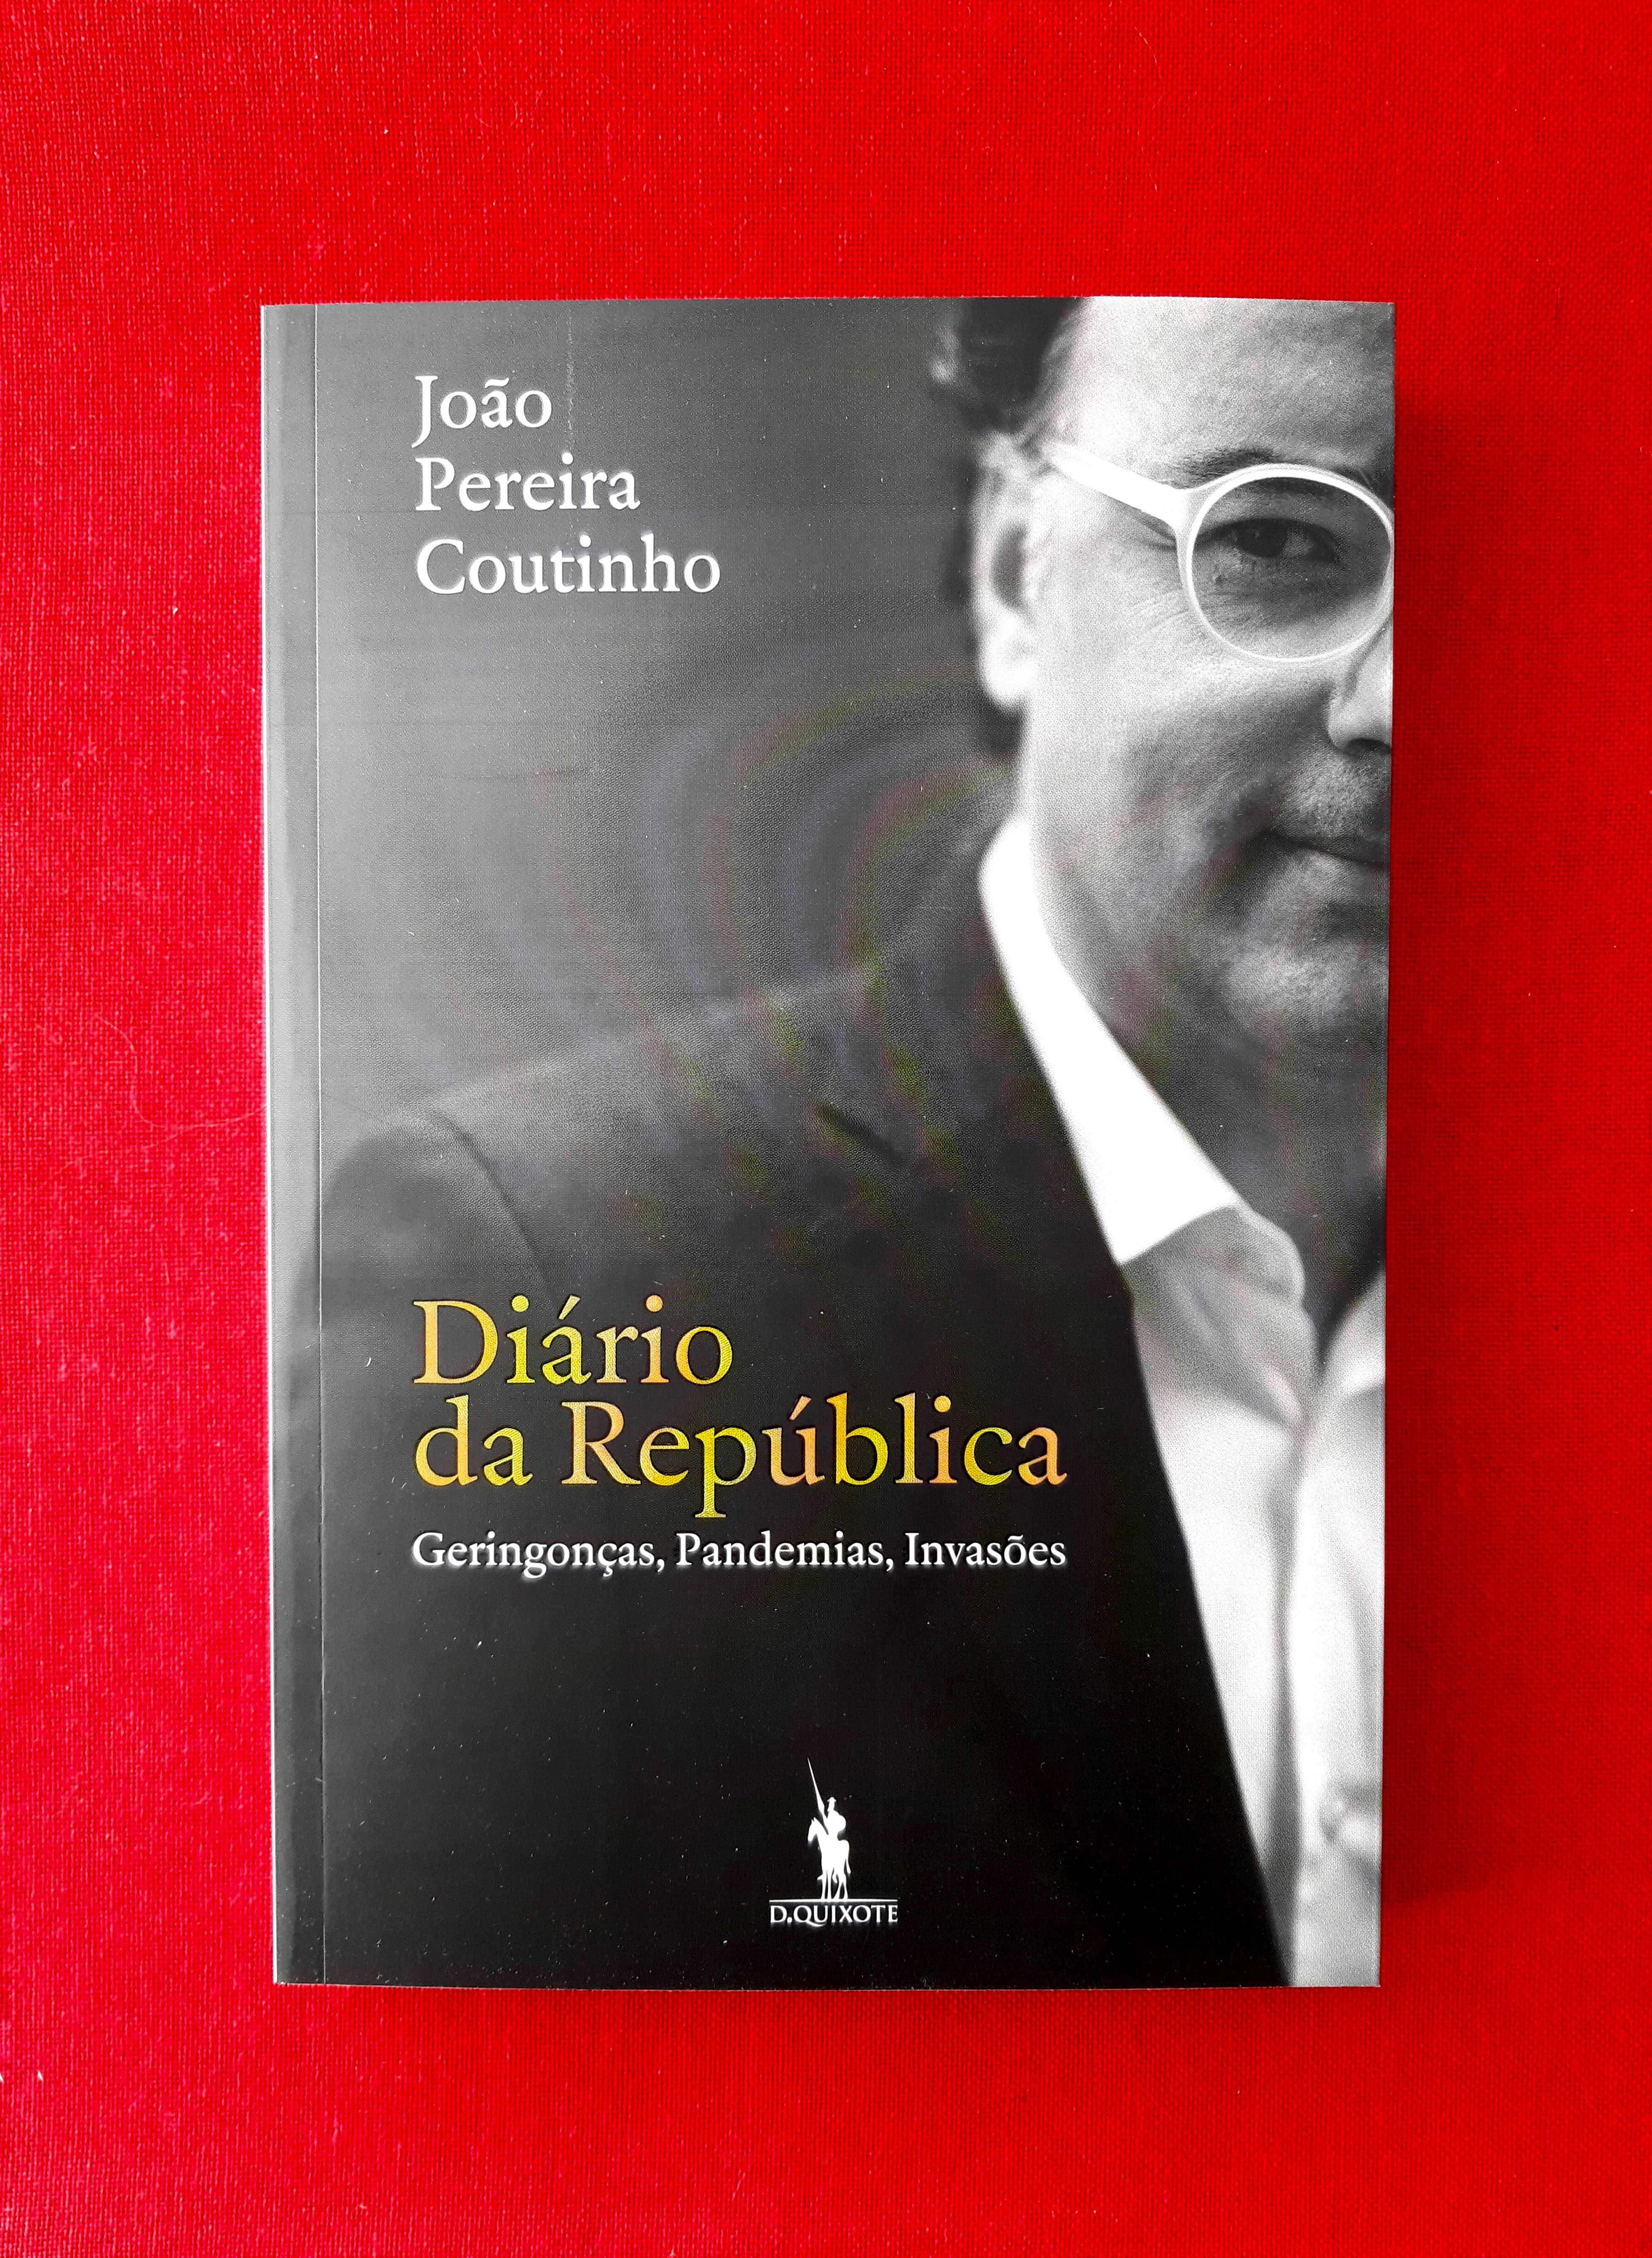 Diário da República - João Pereira Coutinho